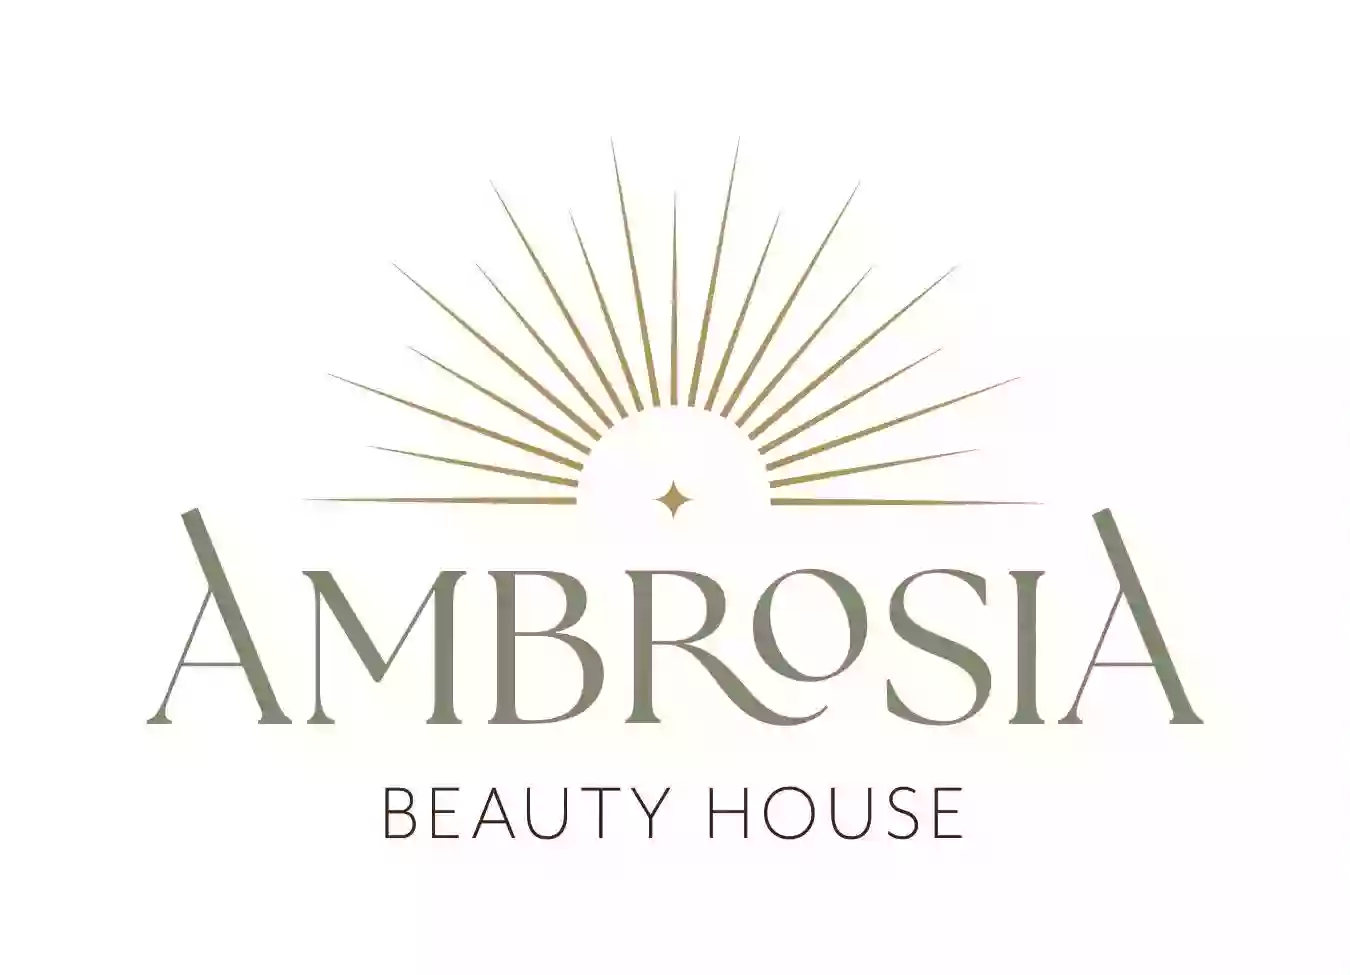 Ambrosia Beauty House